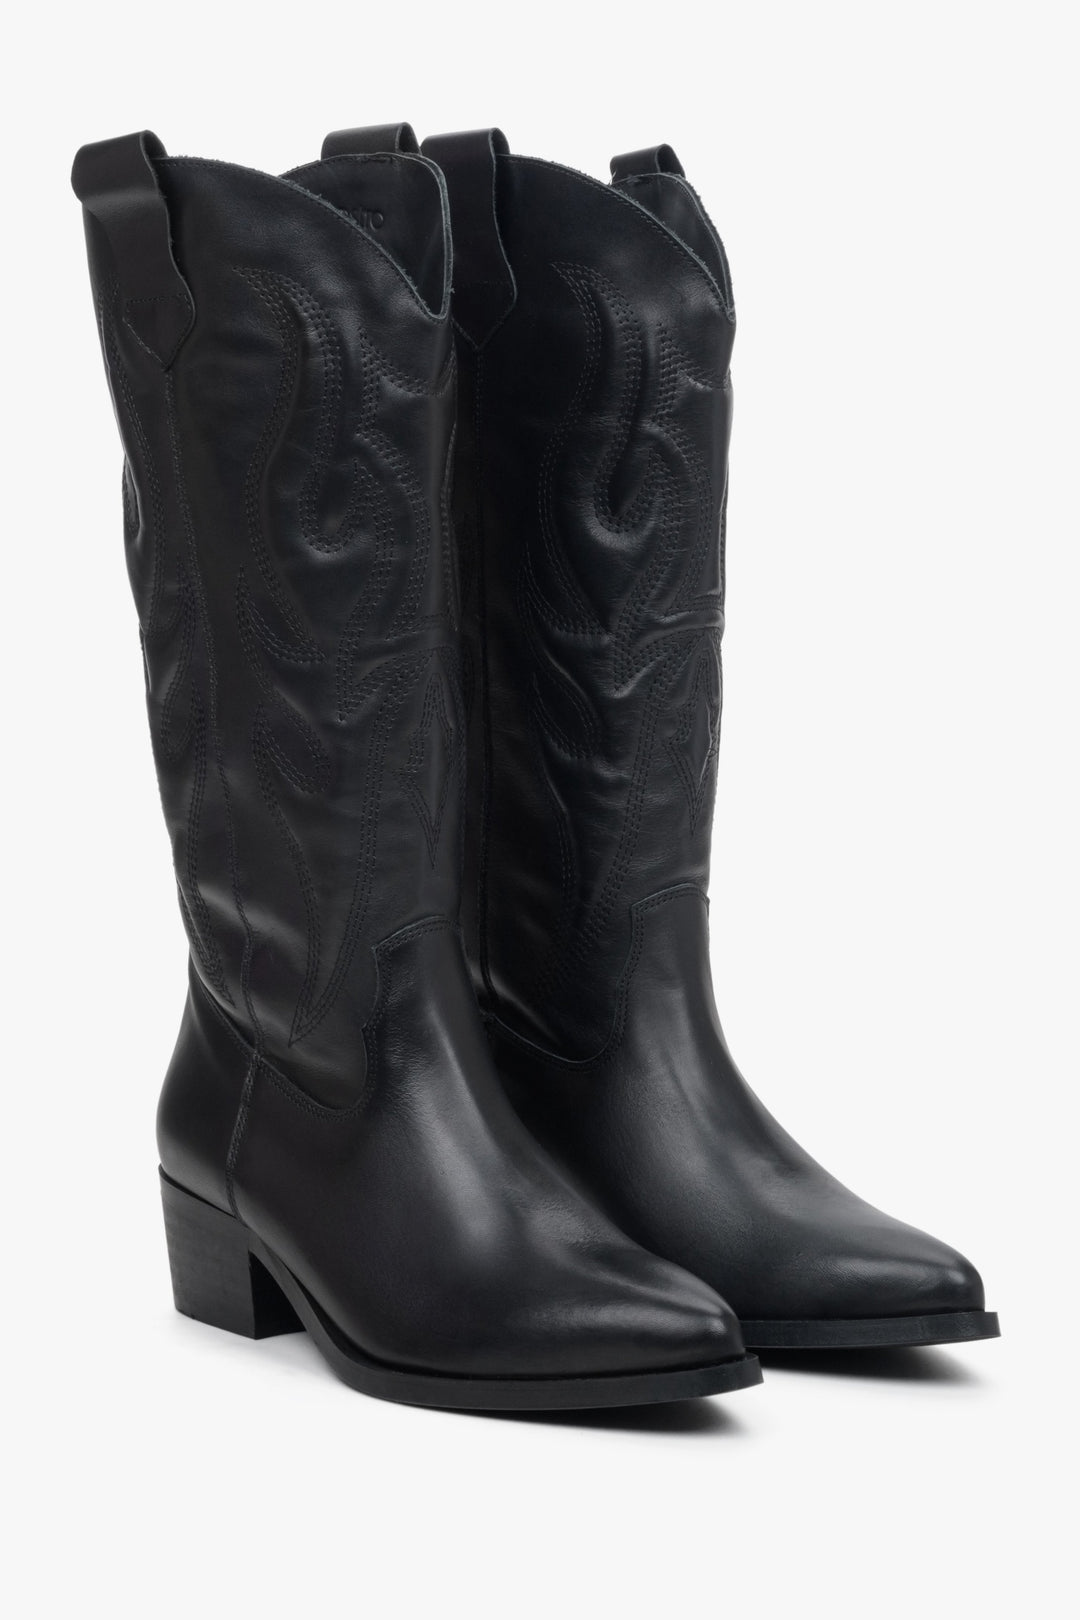 Women's black leather cowboy boots by Estro.